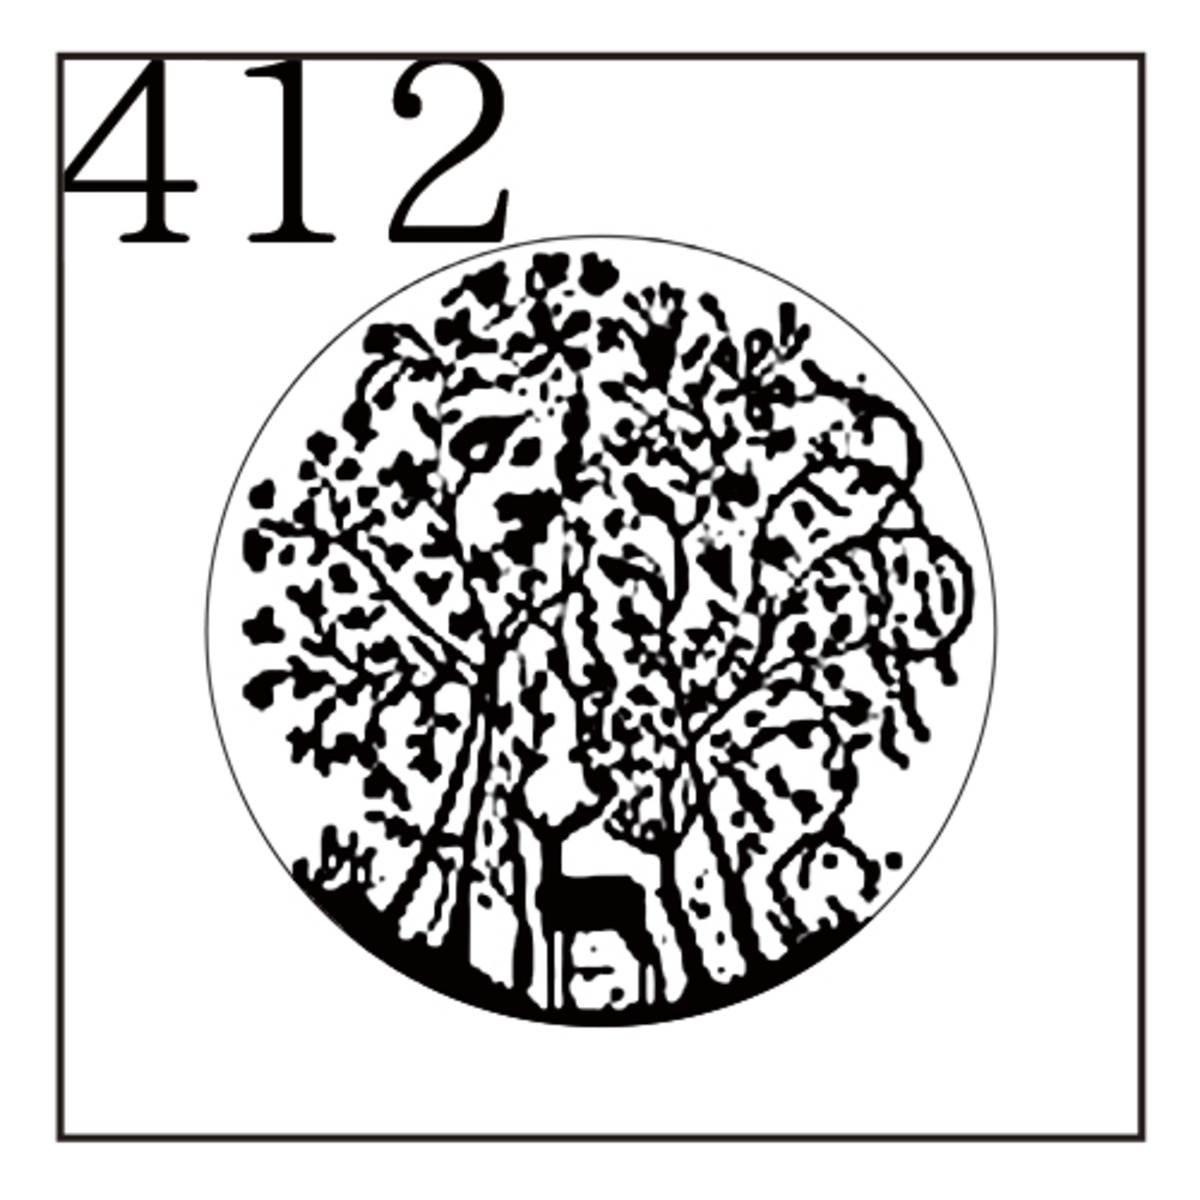 シーリングスタンプ 封蝋印 412 動物 プレミアム ビッグサイズ 3cm系 シカ 鹿 森林浴 自然 シルエット イラスト Witch Craft Garden ウィッチクラフトガーデン